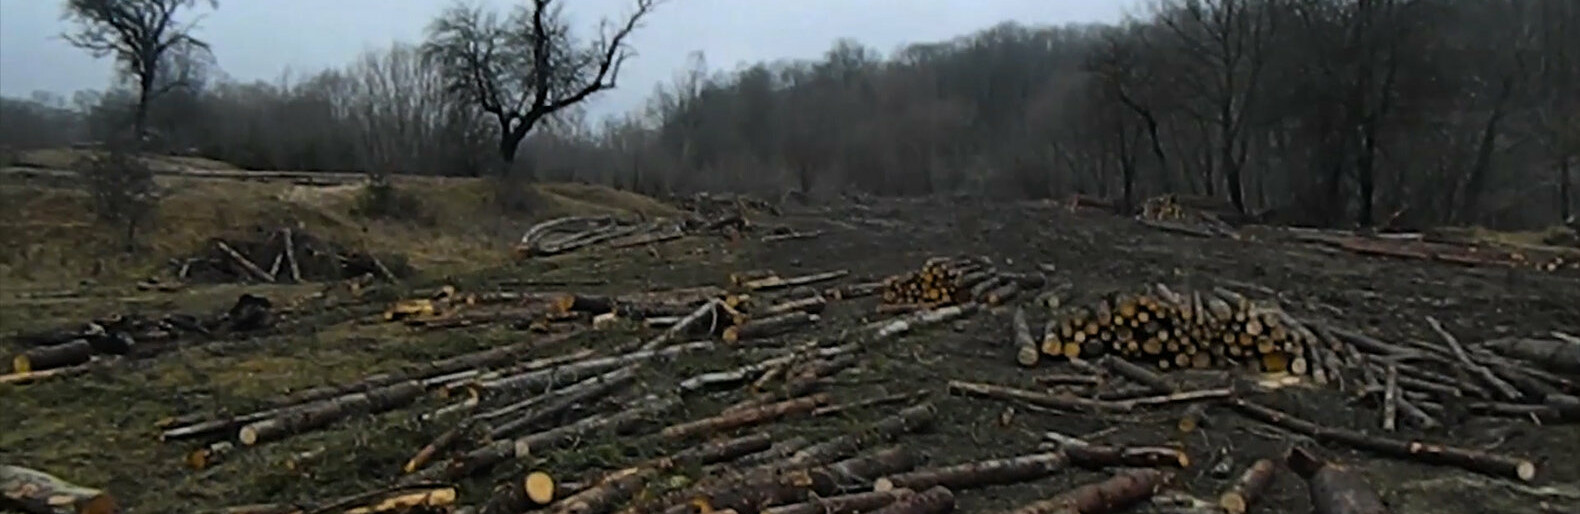 Бо не вберегли: через незаконні вирубки на Чернігівщині оштрафували лісгосп